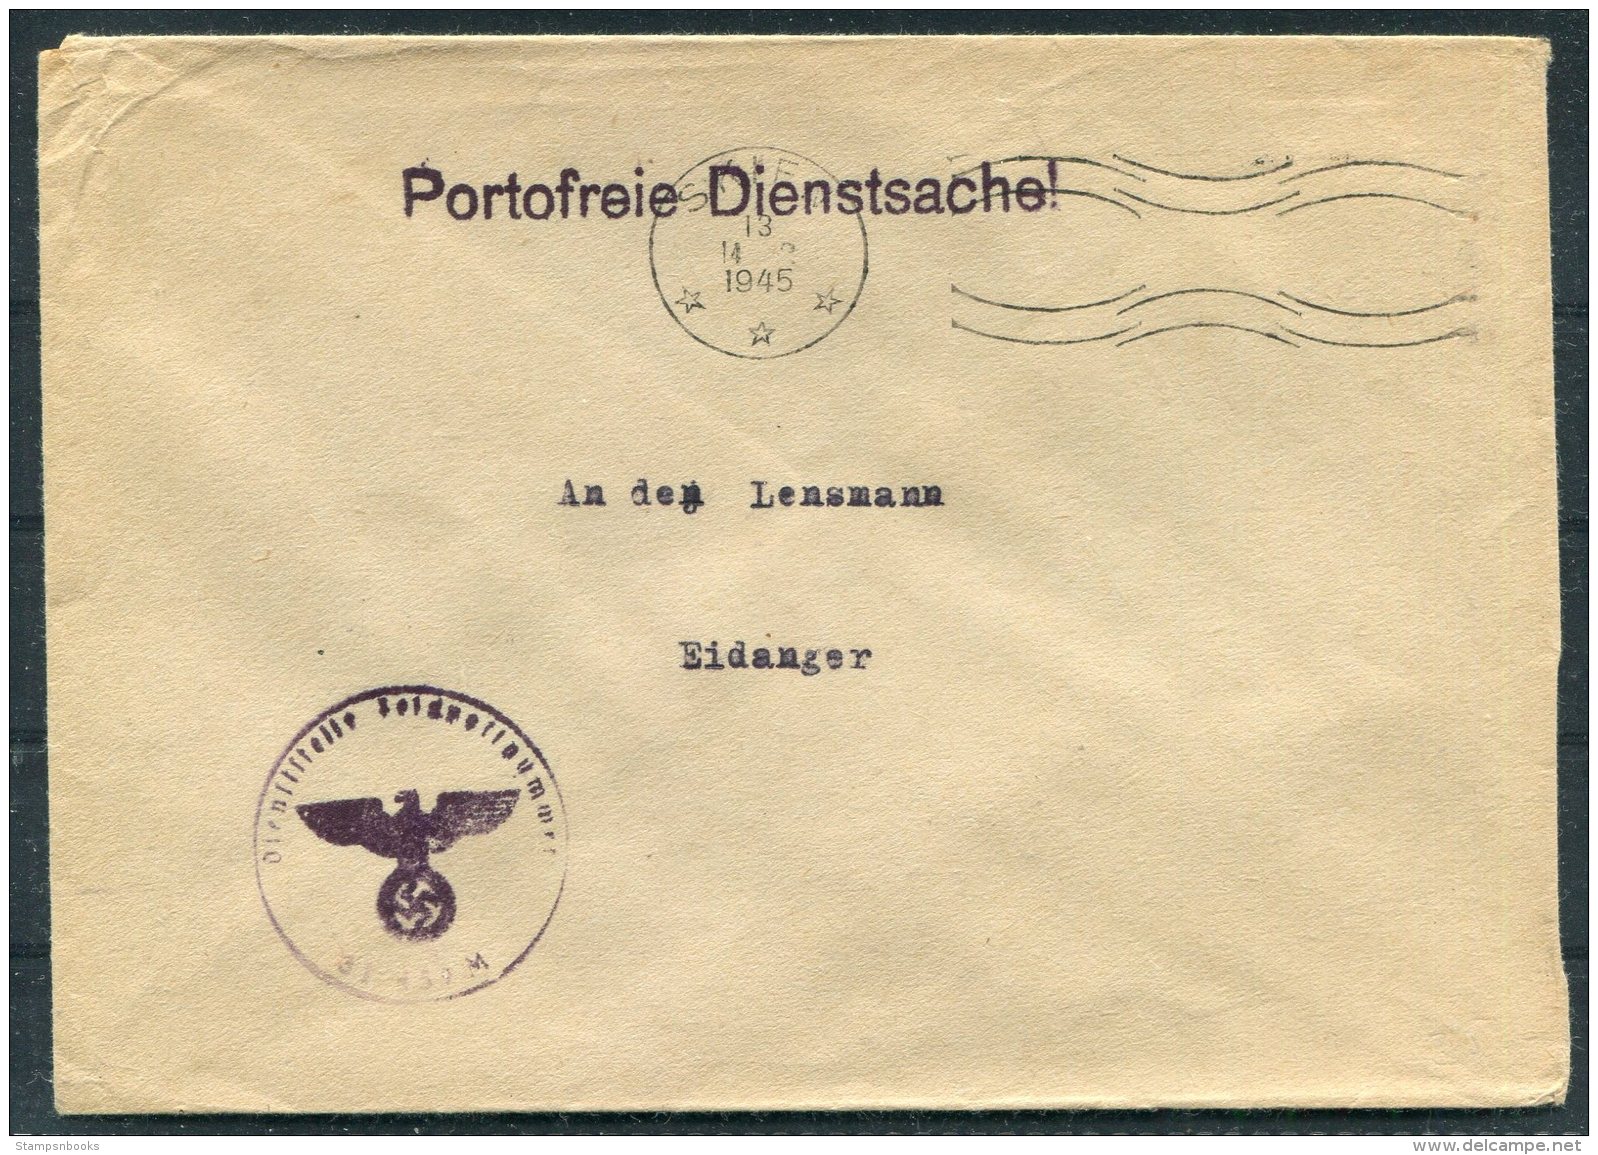 1945 Norway Germany Deutsche DR Feldpost Fieldpost Portofreie Dienstsache Reichseigentum Skien Cover - Eidanger - Covers & Documents